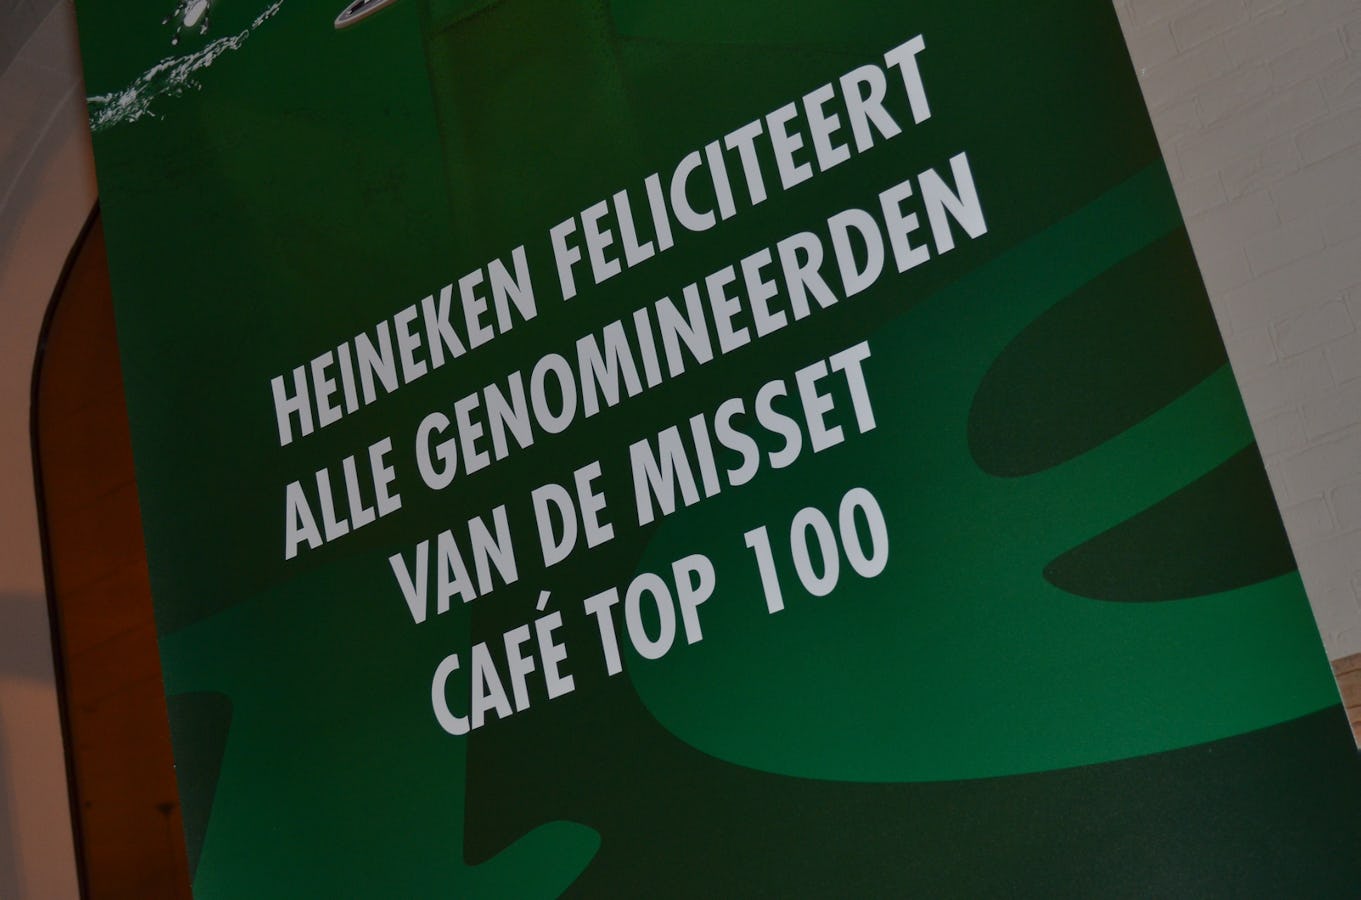 Café Top 100 2015: de Aanraders